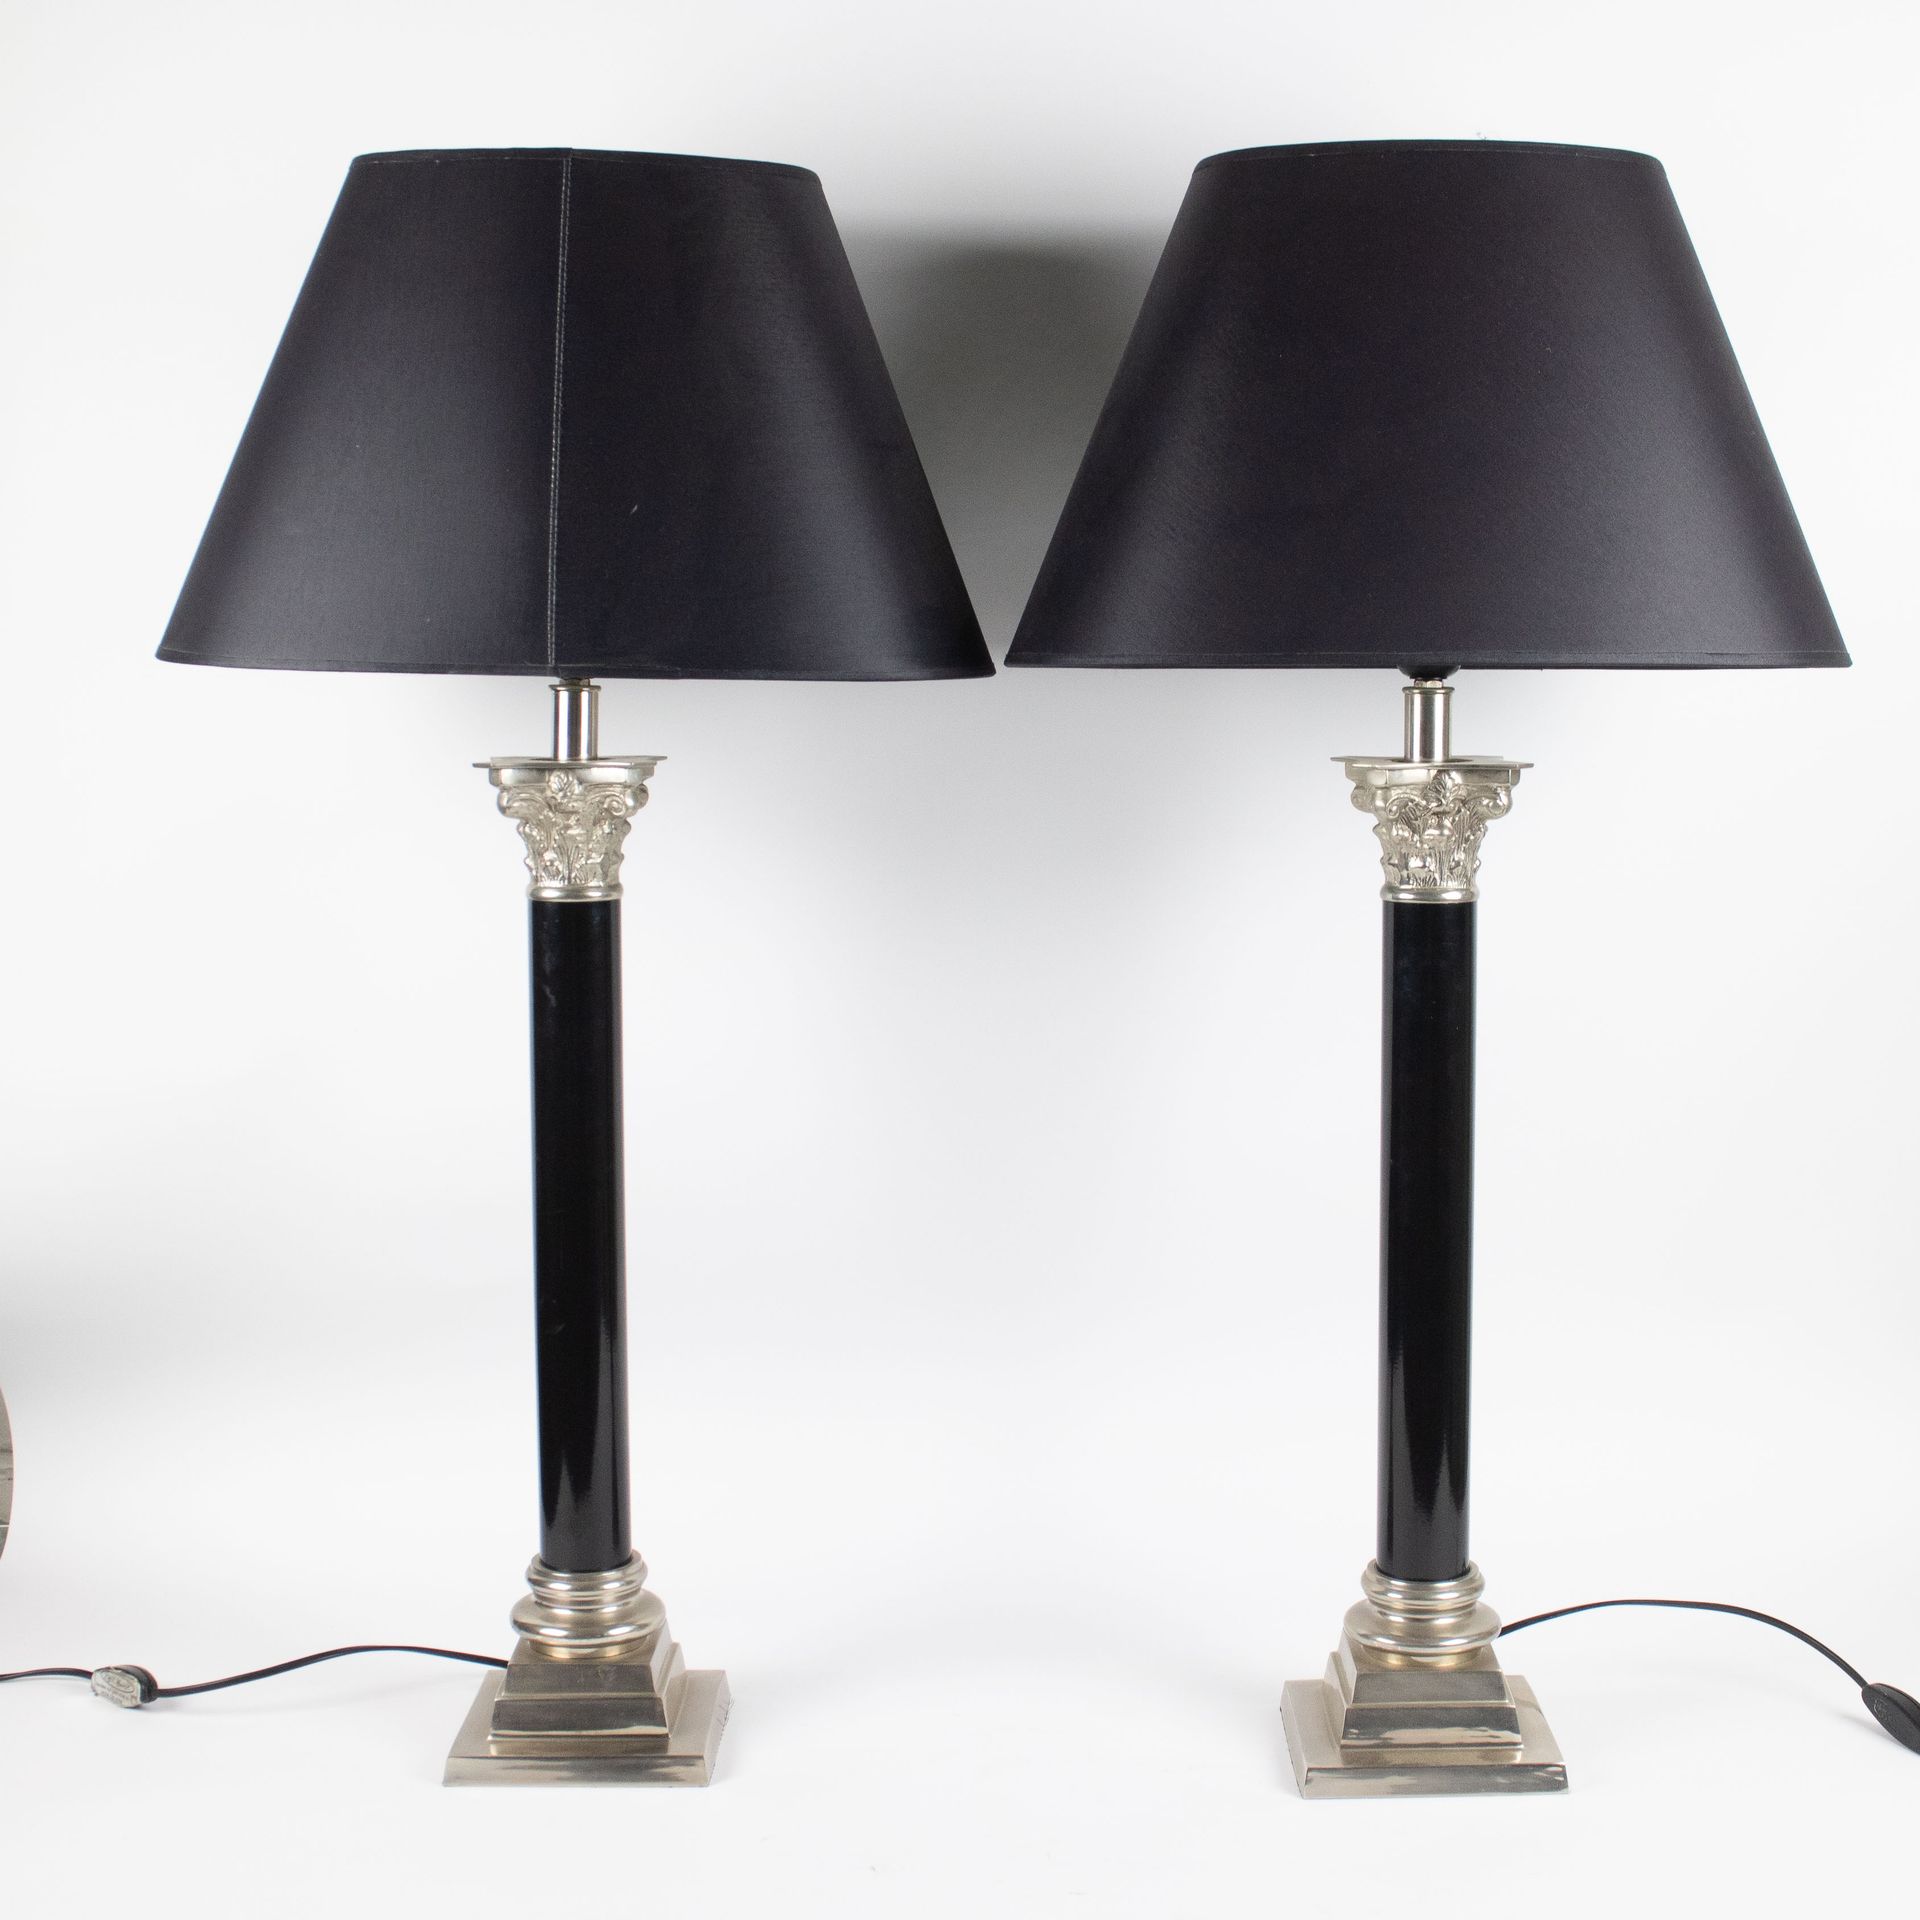 Pair of lamps style Empire Een koppel lampadaires in Empirestijl.
H 86 cm